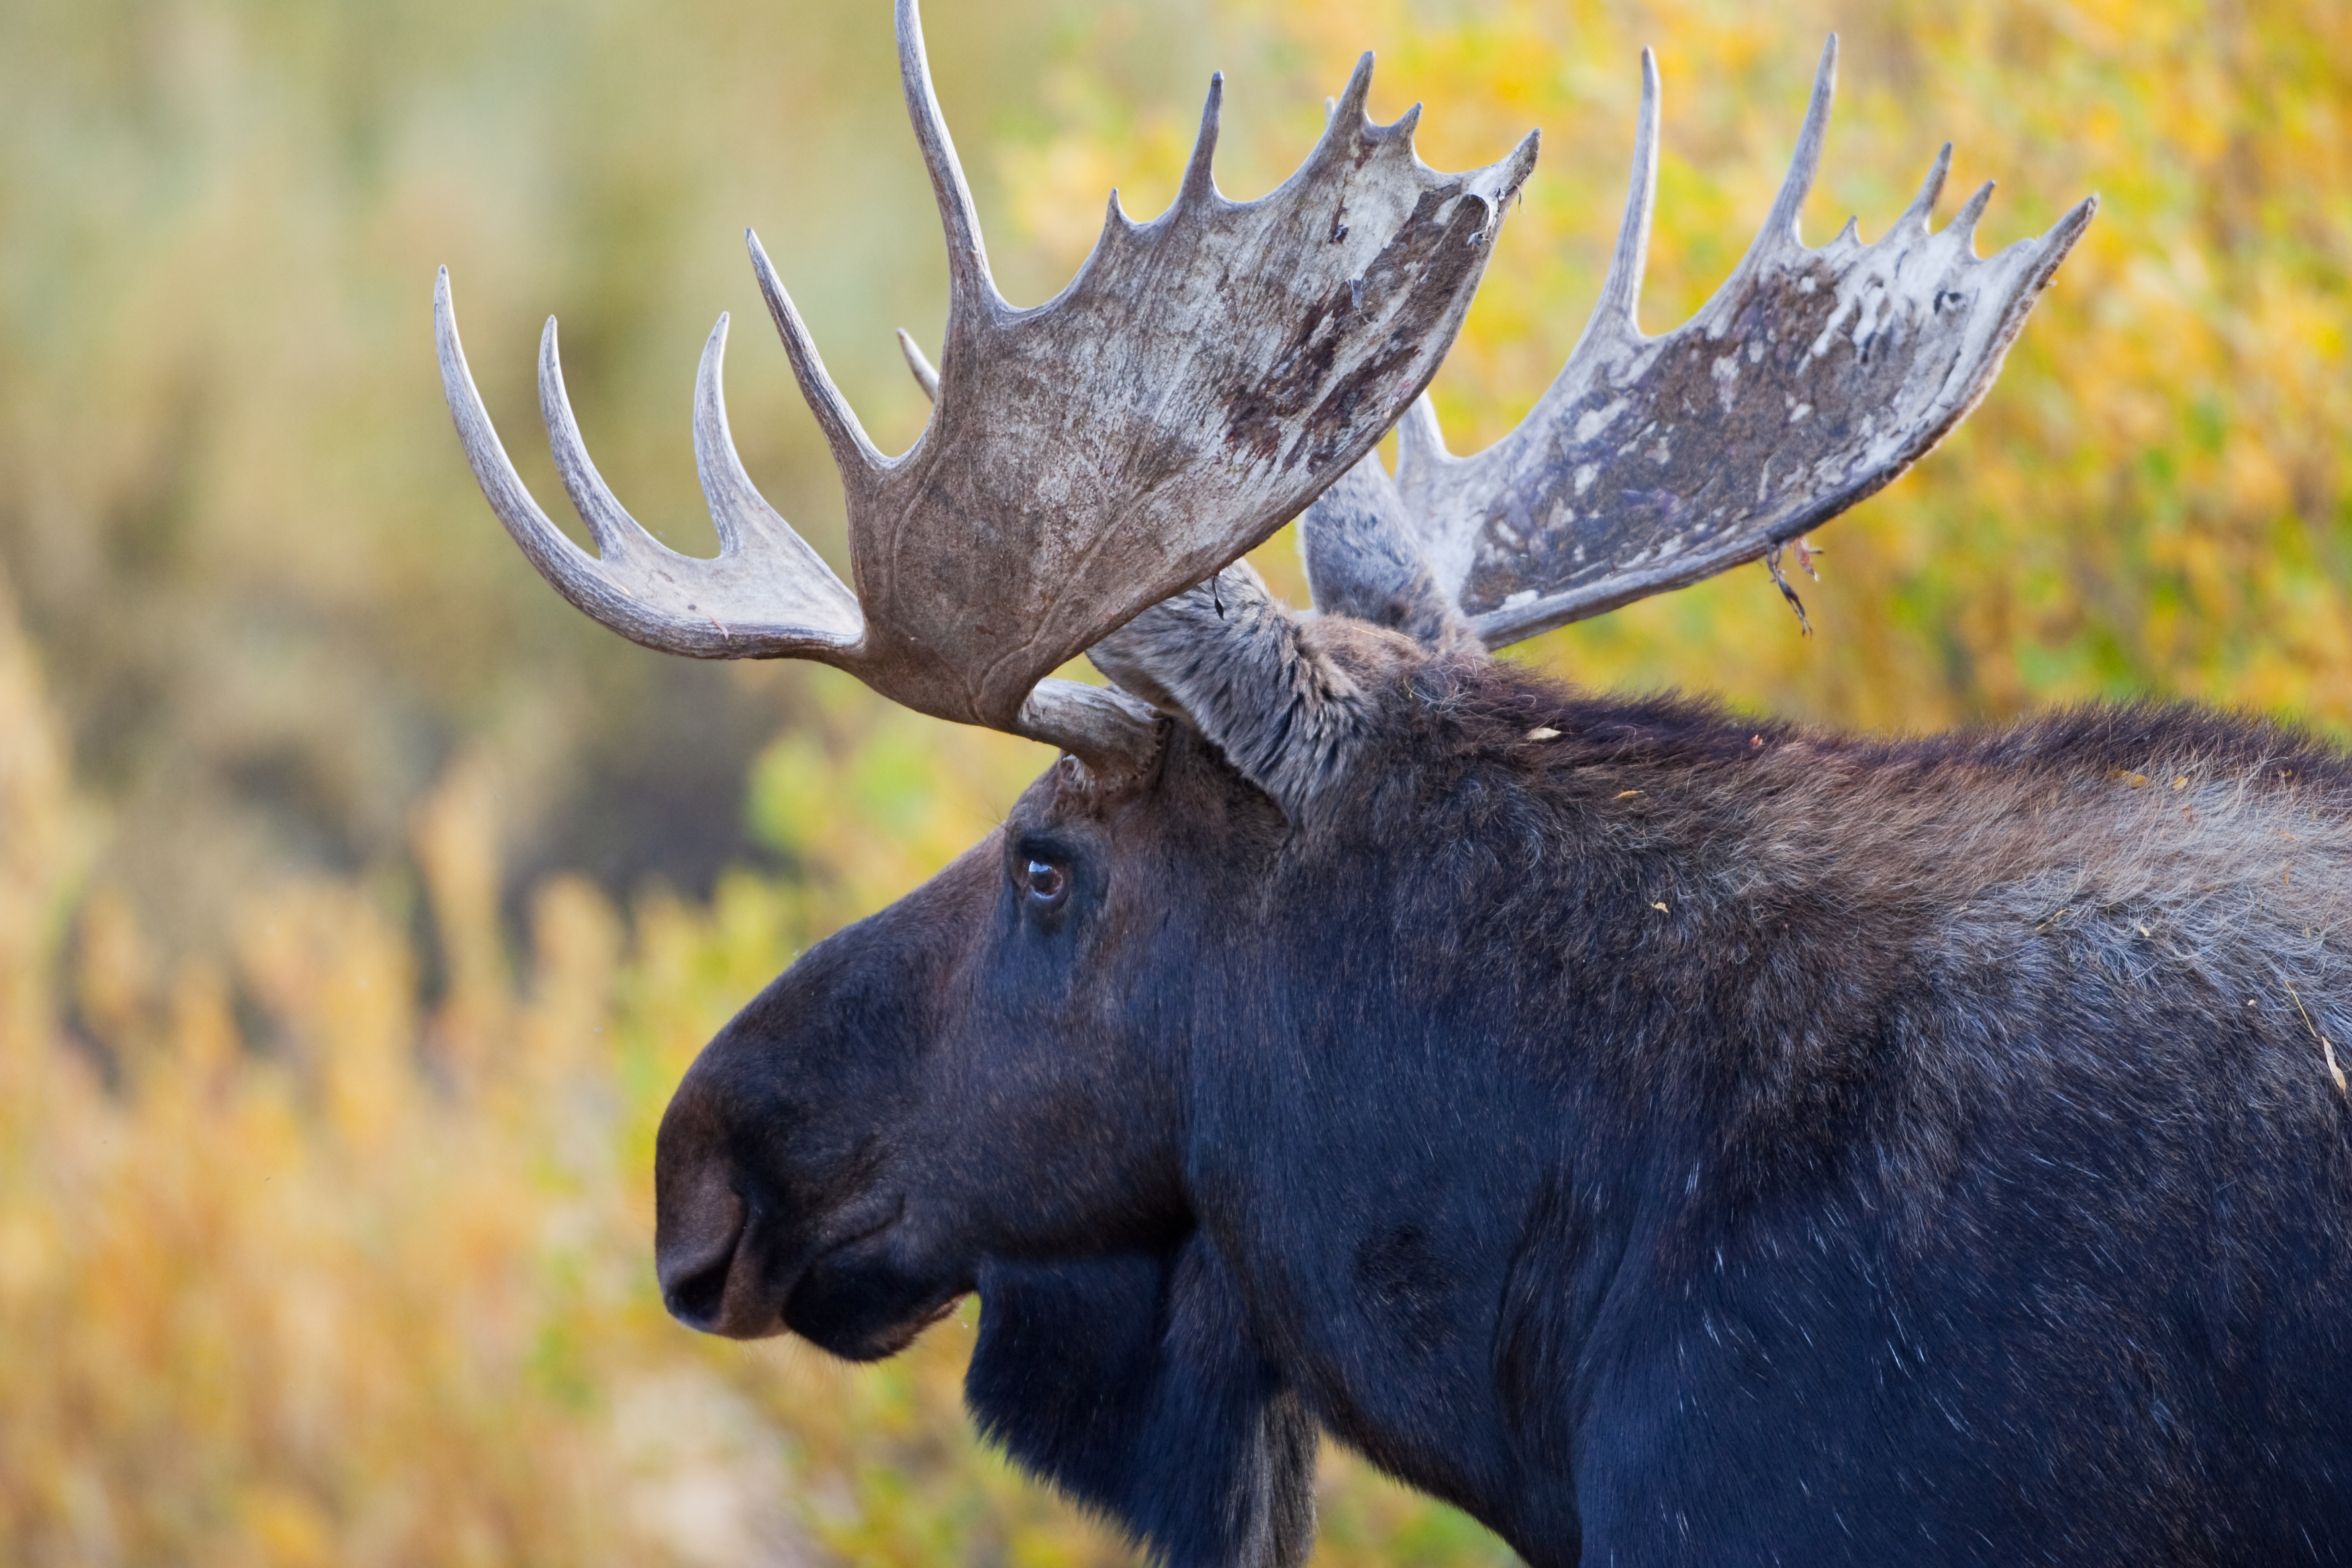 "Bull Moose Closeup Grand Teton National Park, Wyoming MORE MOOSE"